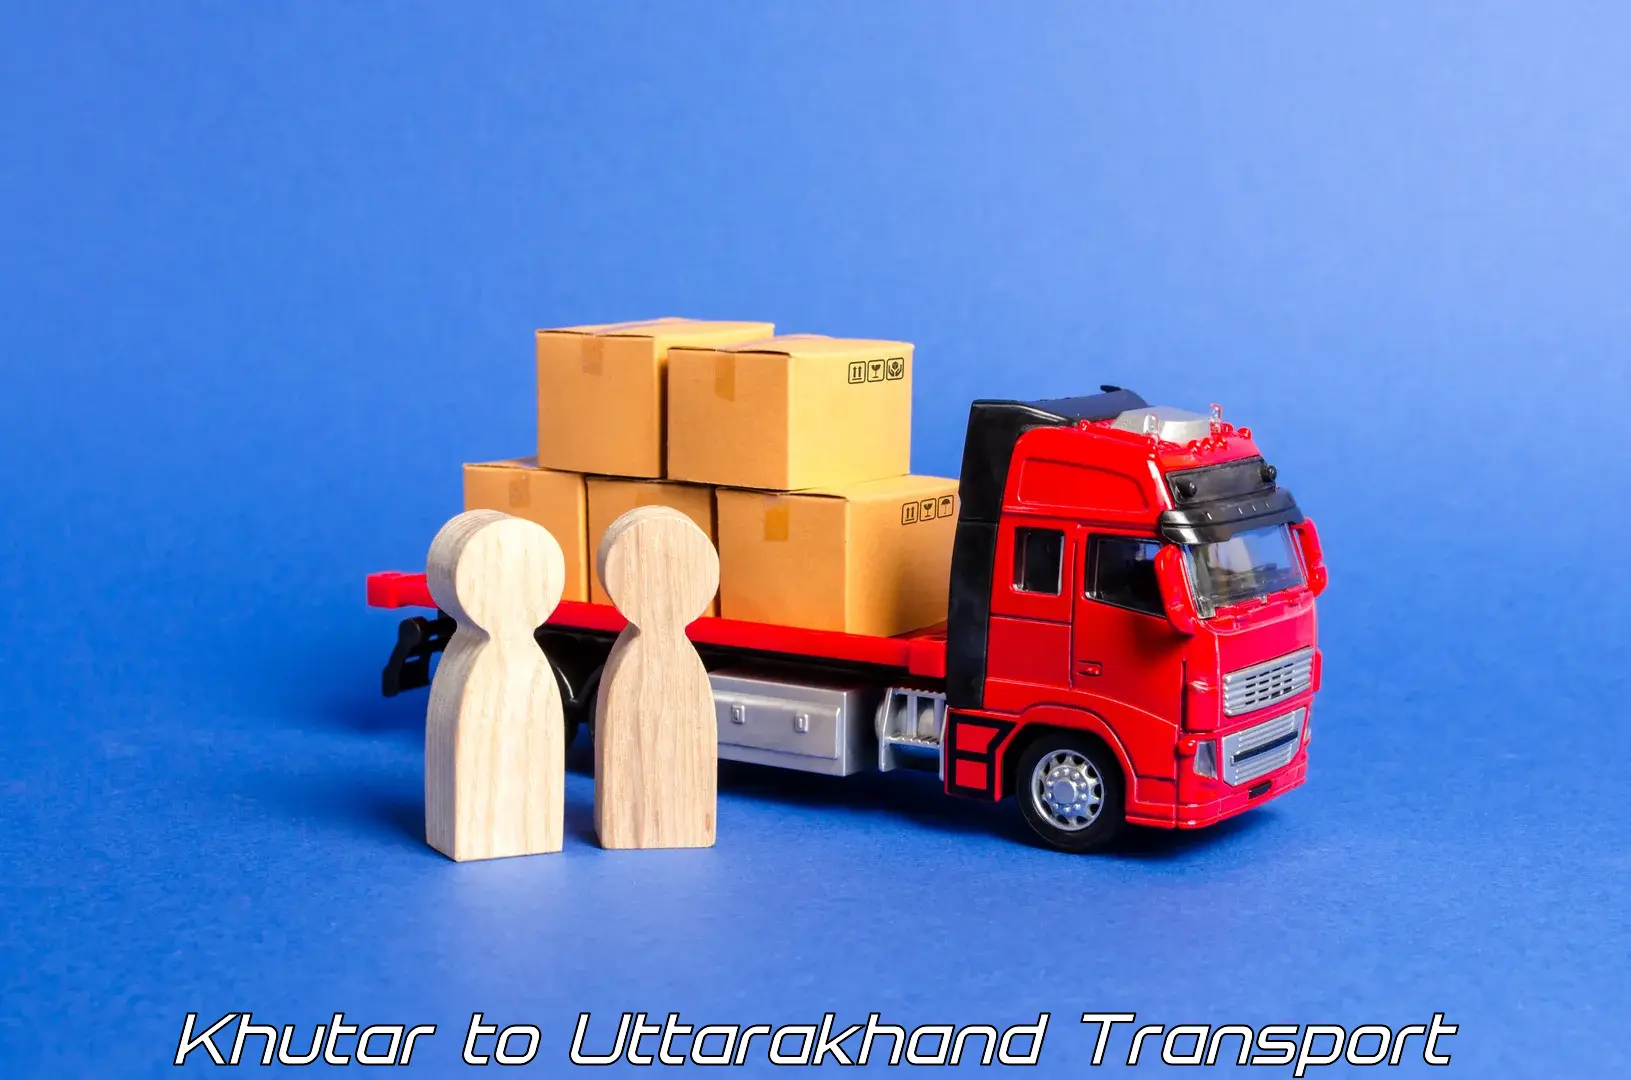 Interstate transport services Khutar to Uttarkashi